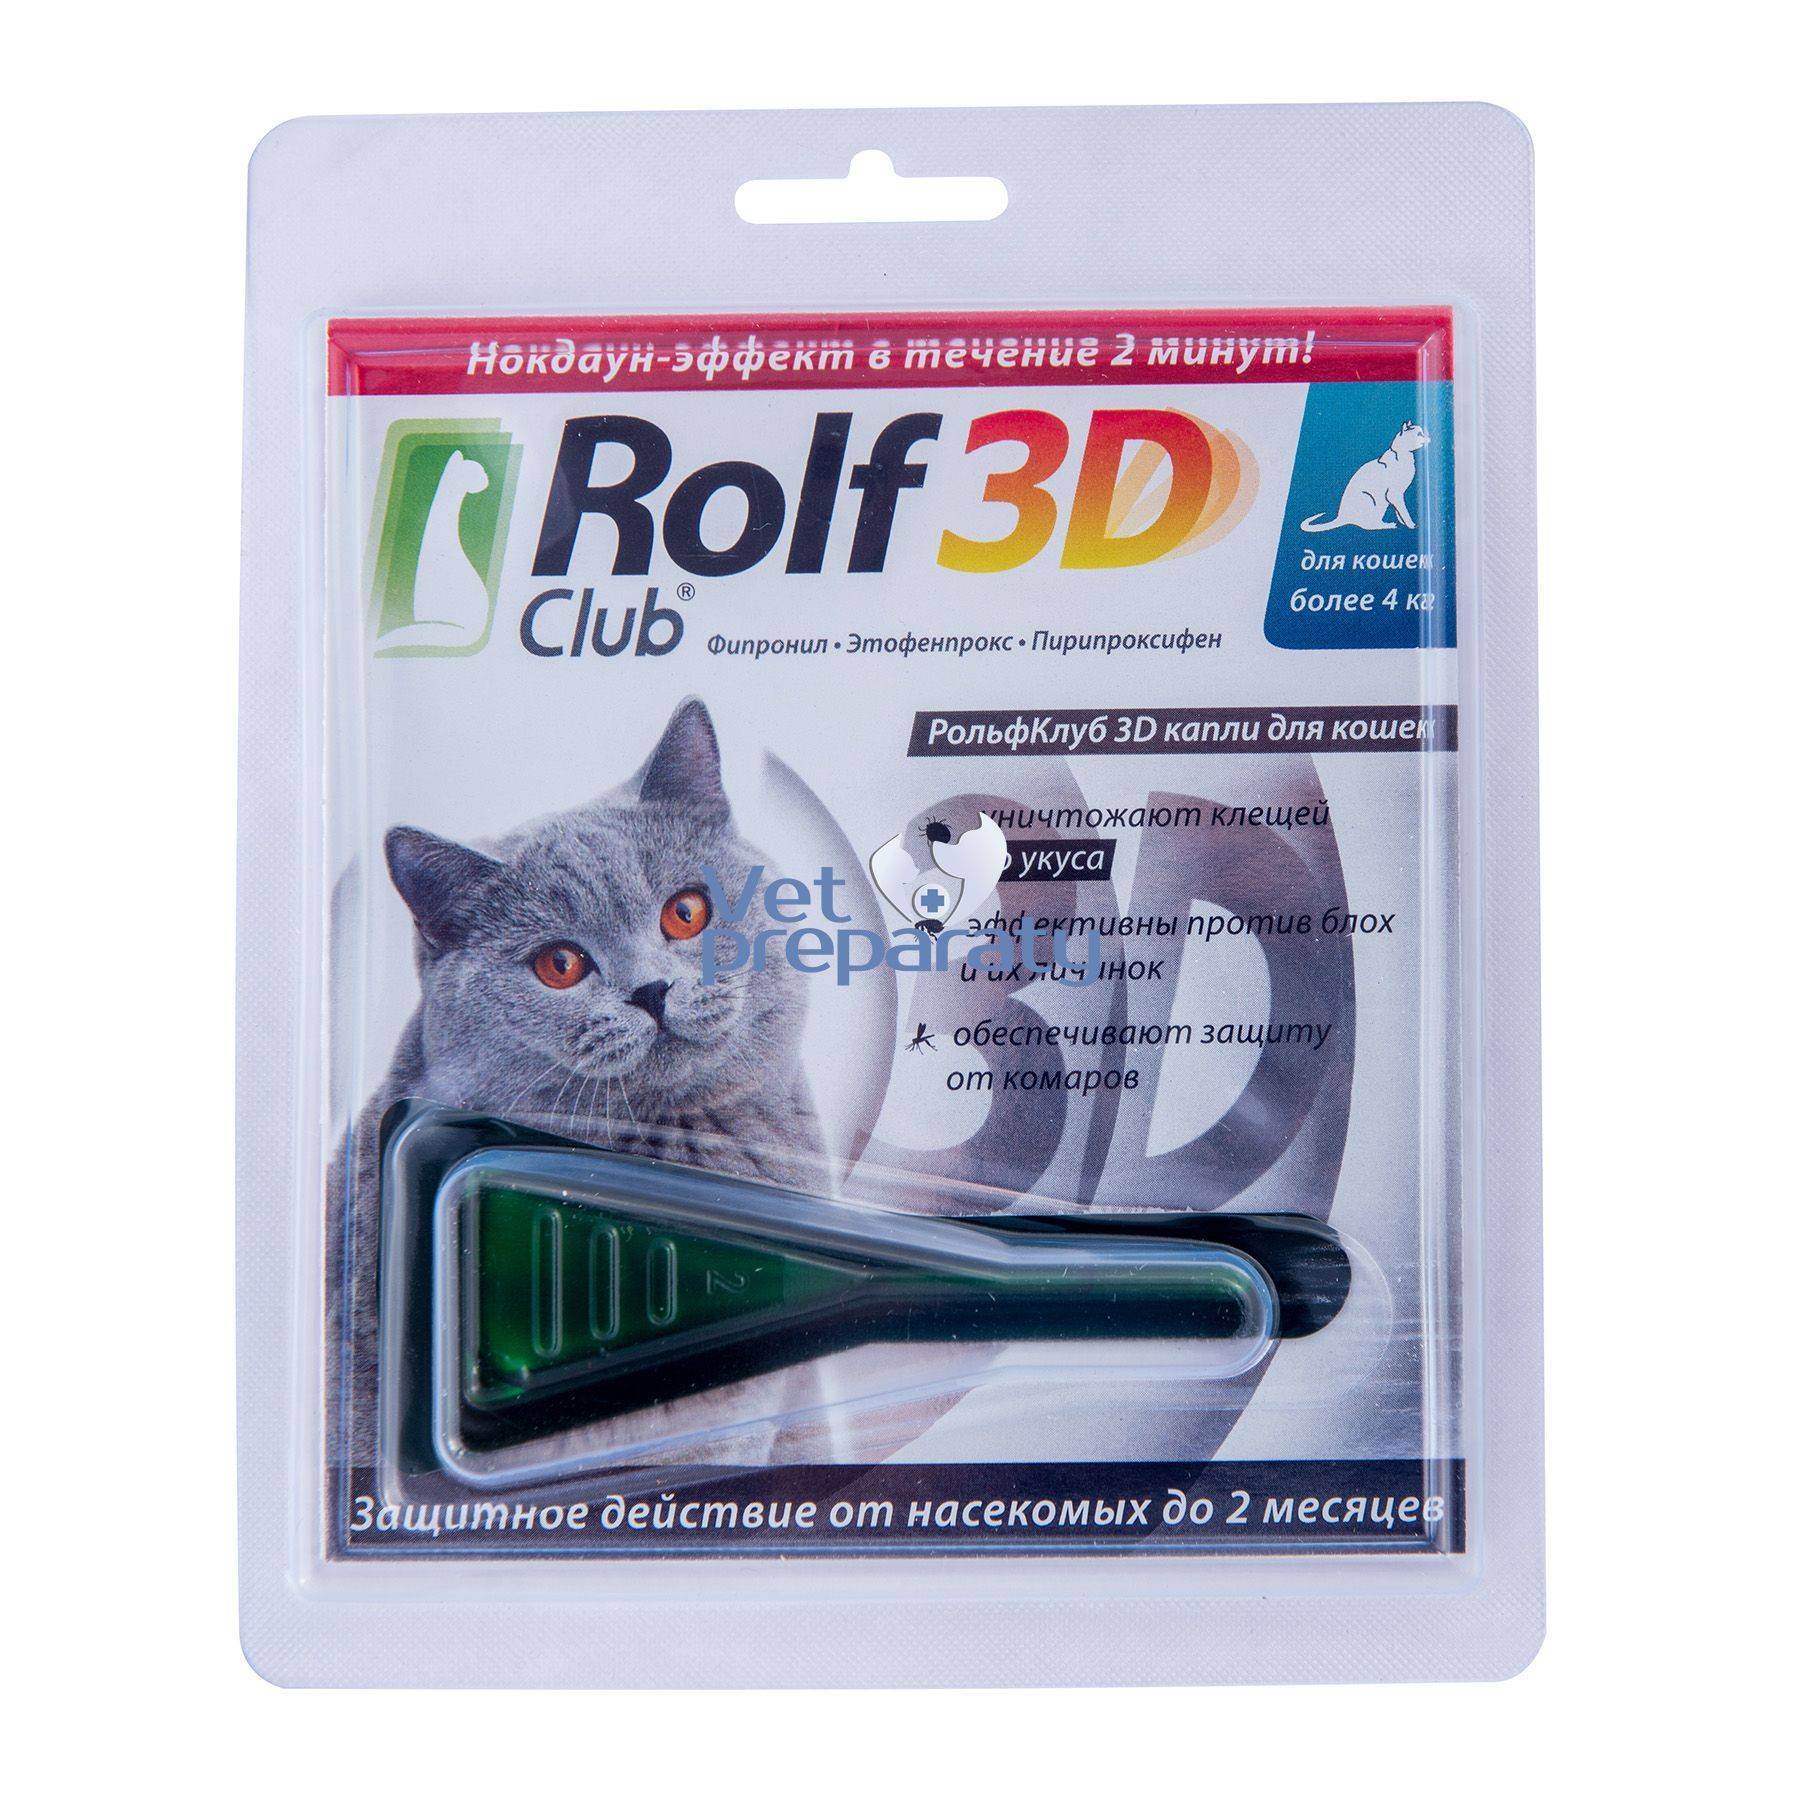 Рольф клуб 3д капли для кошек и собак: инструкция по применению и отзывы